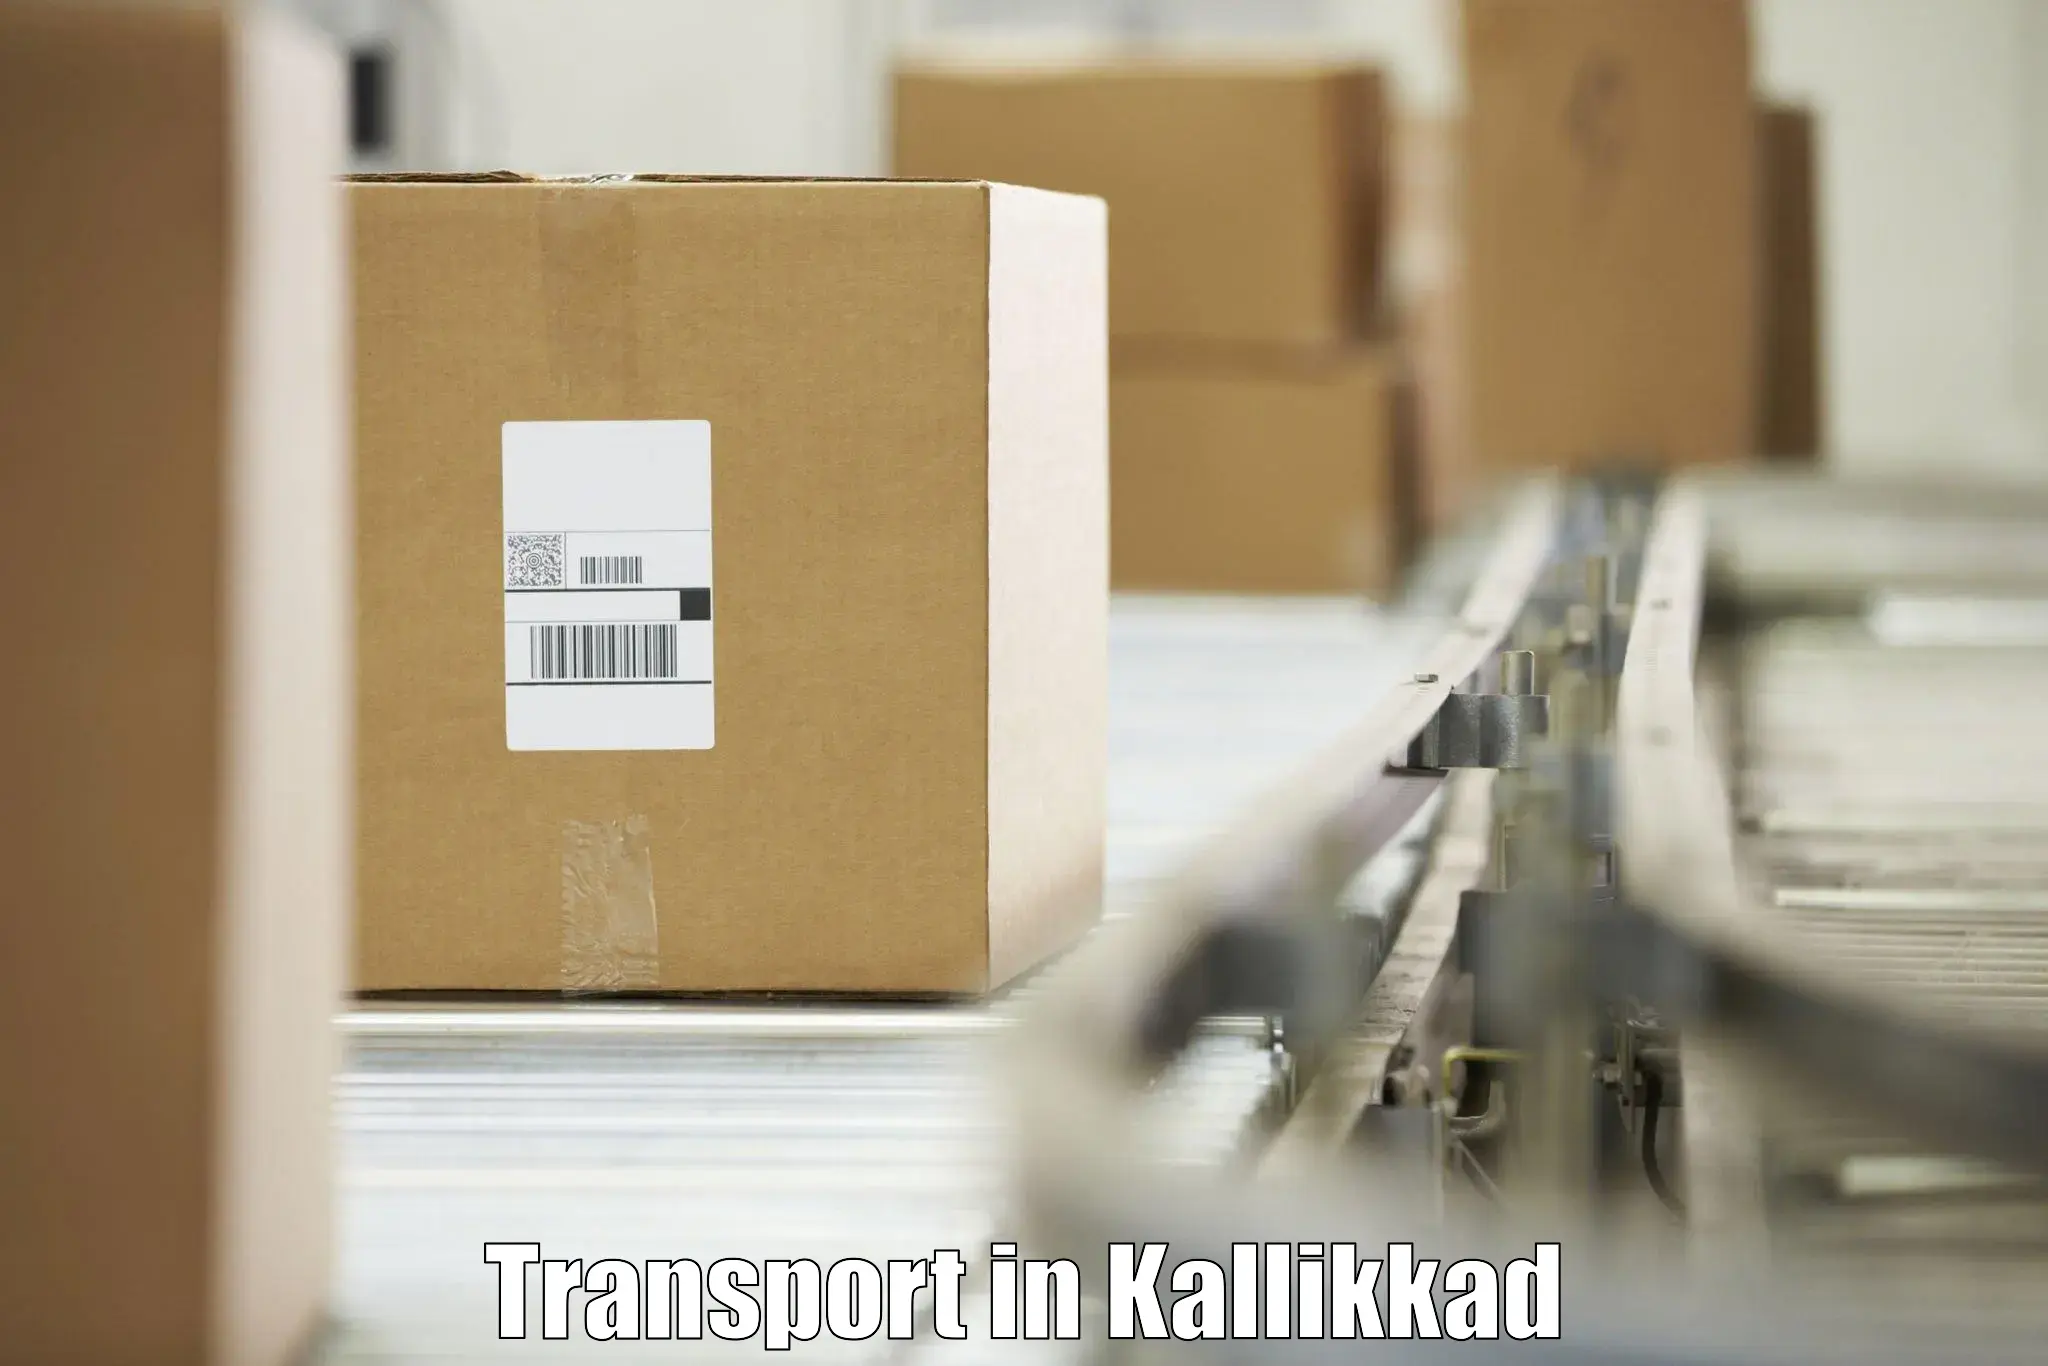 Interstate goods transport in Kallikkad